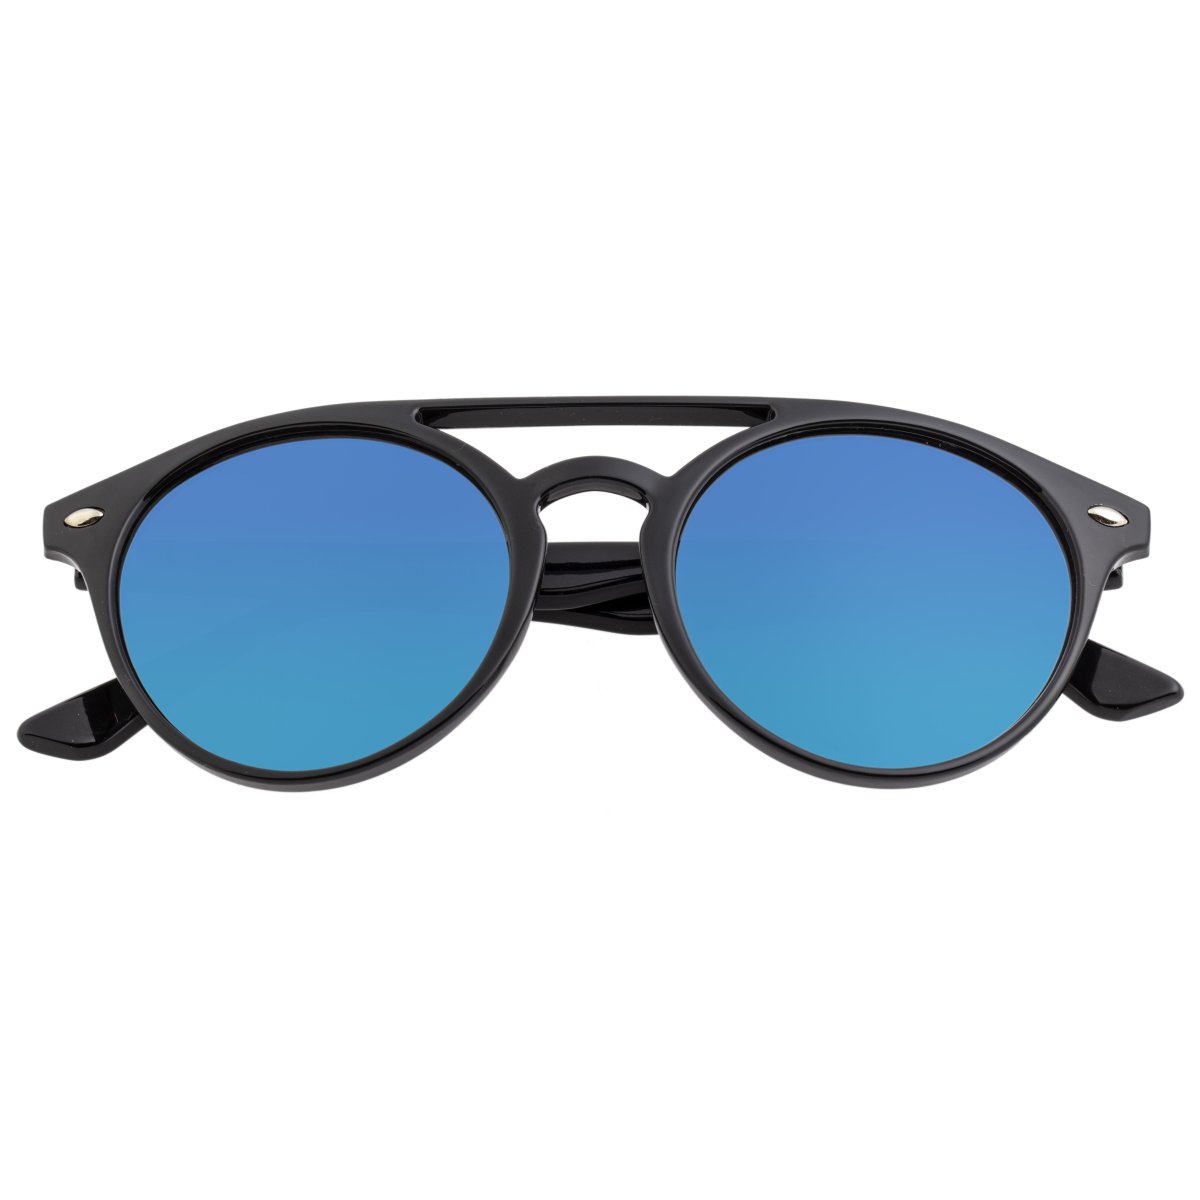 Simplify Finley Polarized Sunglasses - Black/Blue  - SSU122-BL